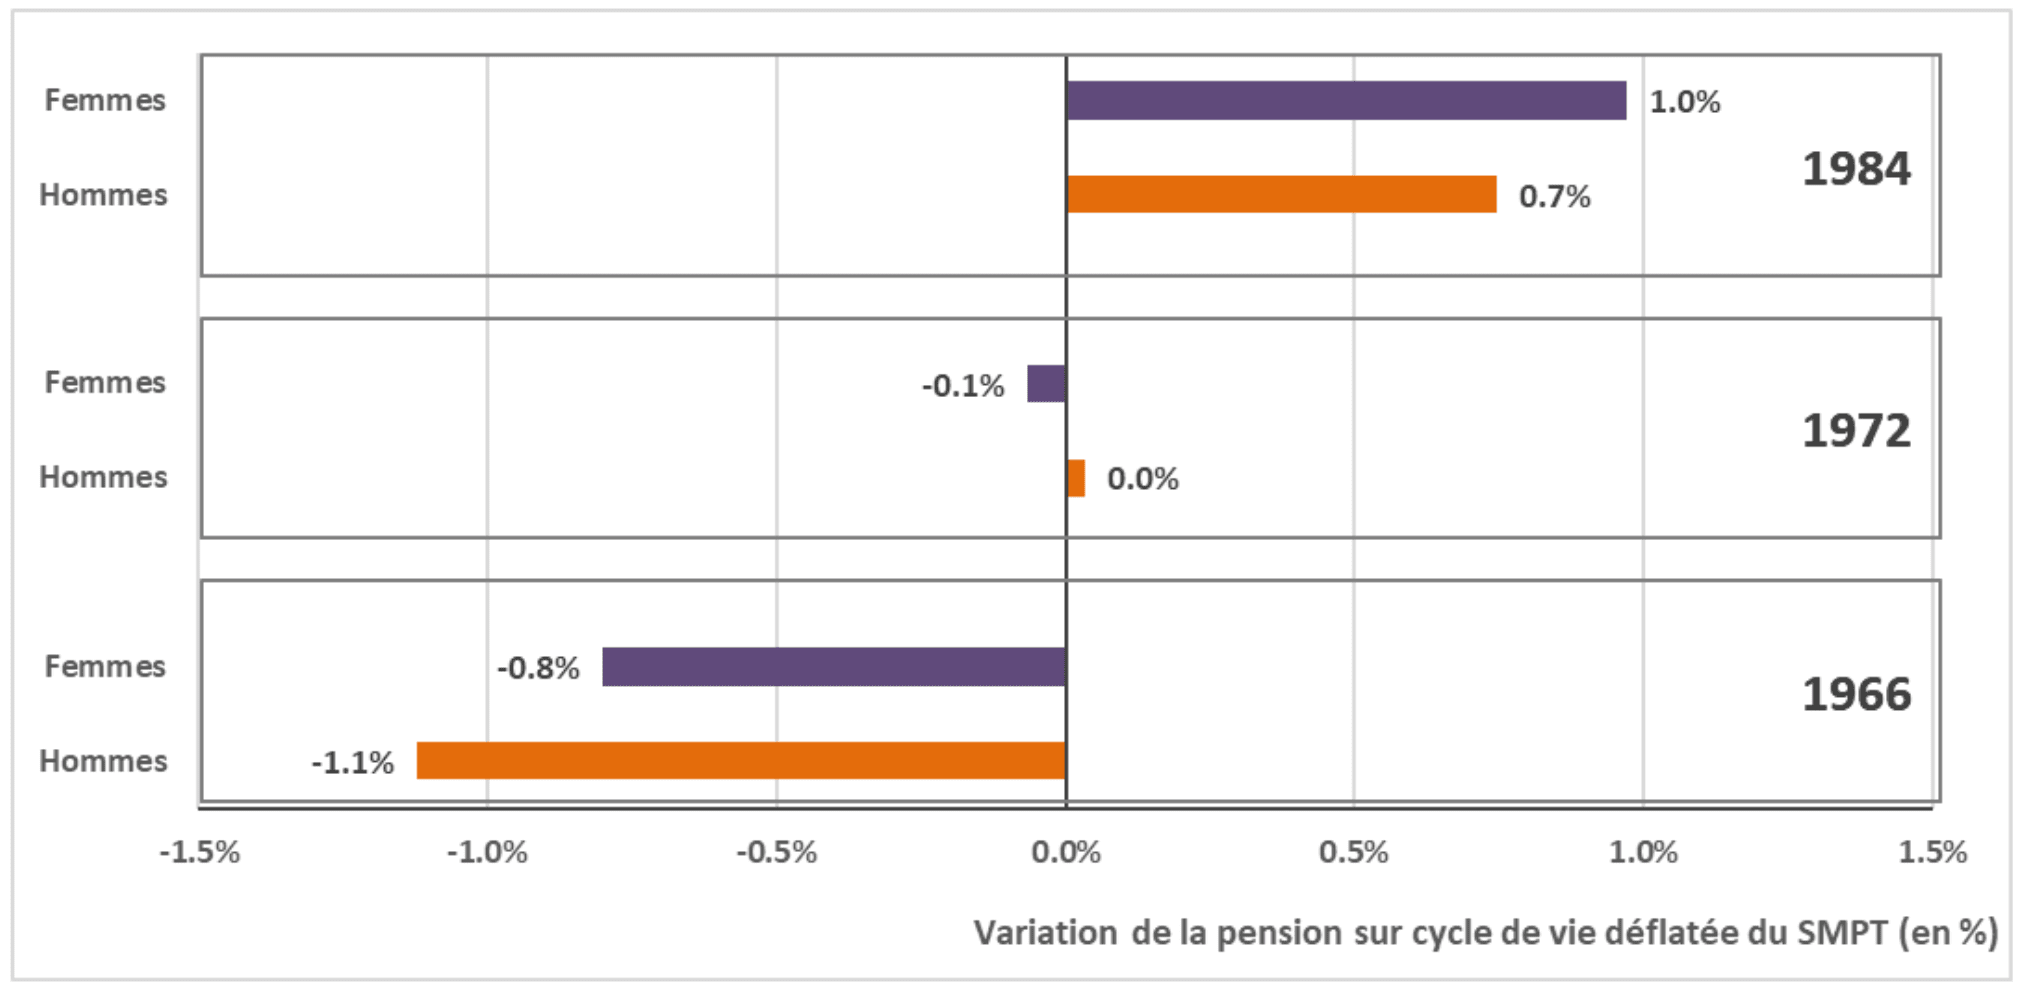 Variation de la pension sur cycle de vie déflatée du SMPT (en %)